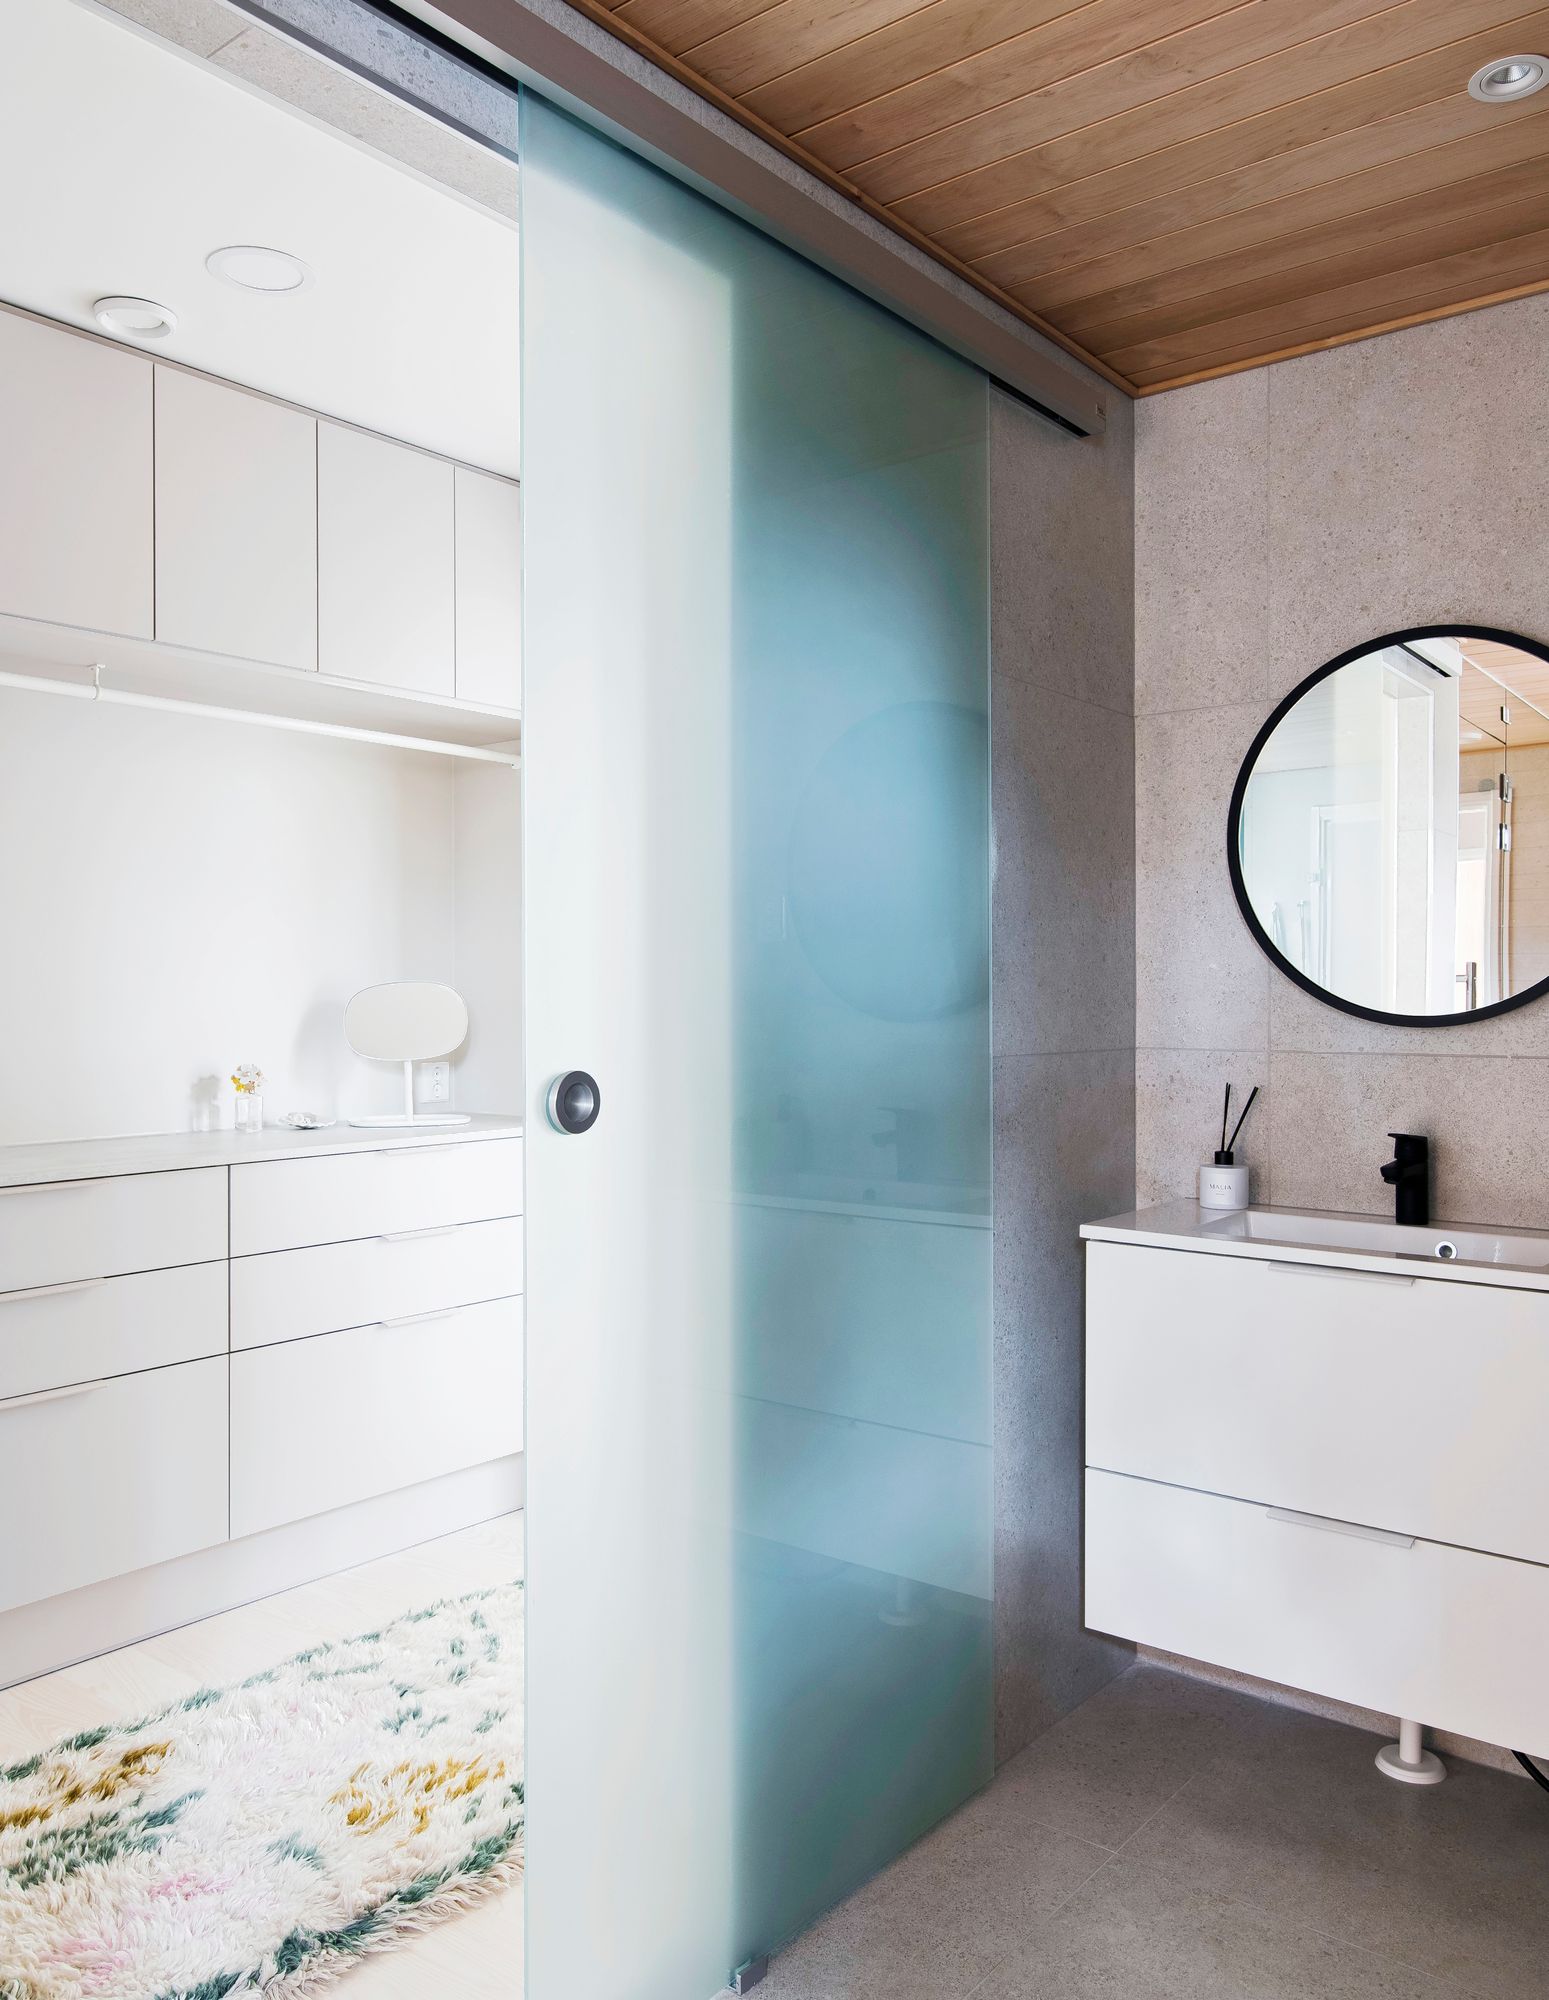 Kastelli Kultarannan kylpyhuoneen ja vaatehuoneen välissä on kosteisiin tiloihin suunniteltu lasiliukuovi, joka päästää valoa kylpyhuoneeseen. Kuva: Niclas Makela